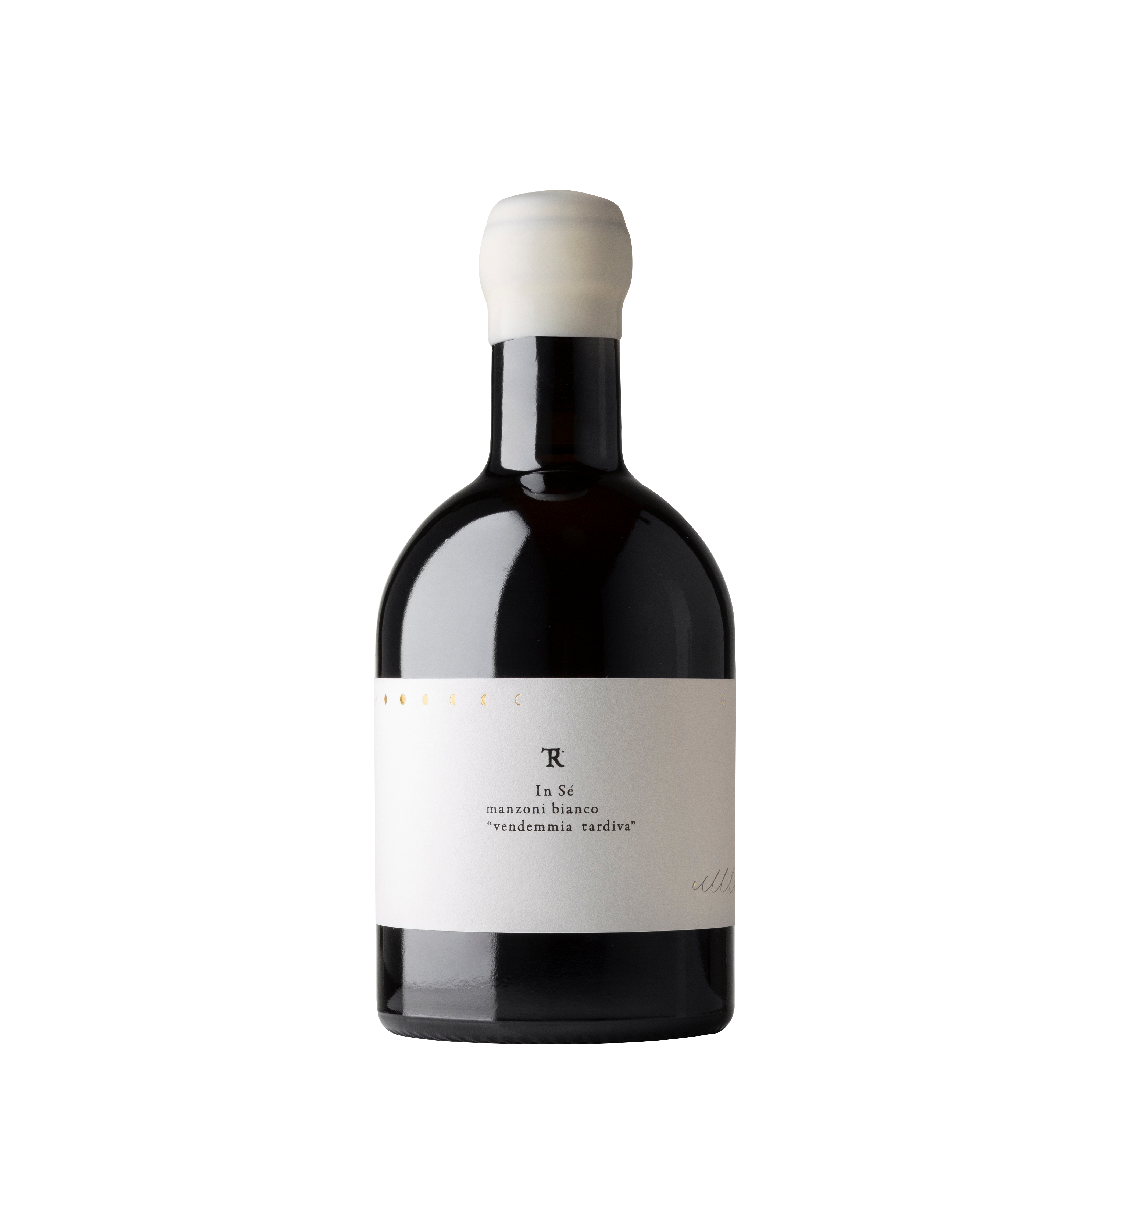 Italo Cescon Tesirare  In Sé Manzoni Bianco "Vendemmia Tardiva" 2018 (375ml) (Organic Wine)